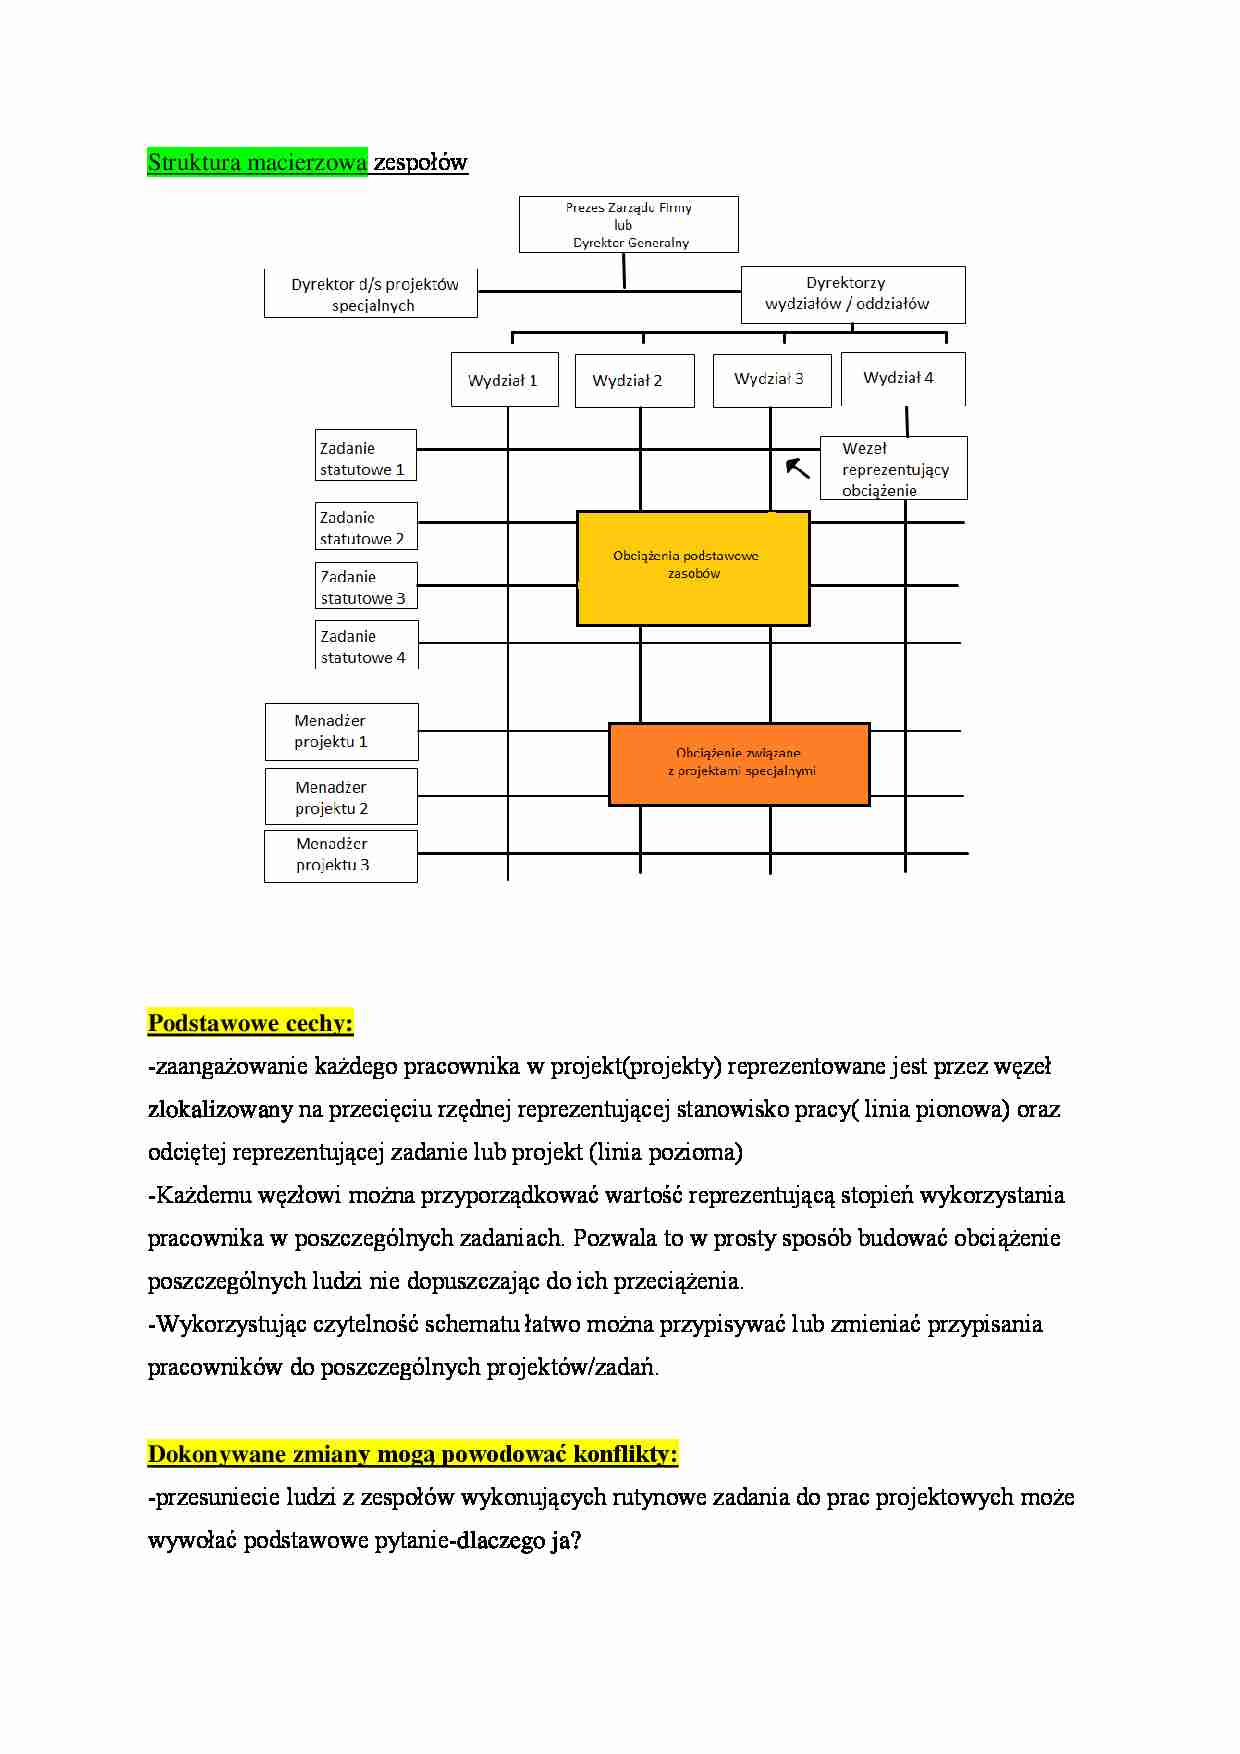 Struktura macierzowa zespołów - omówienie - strona 1